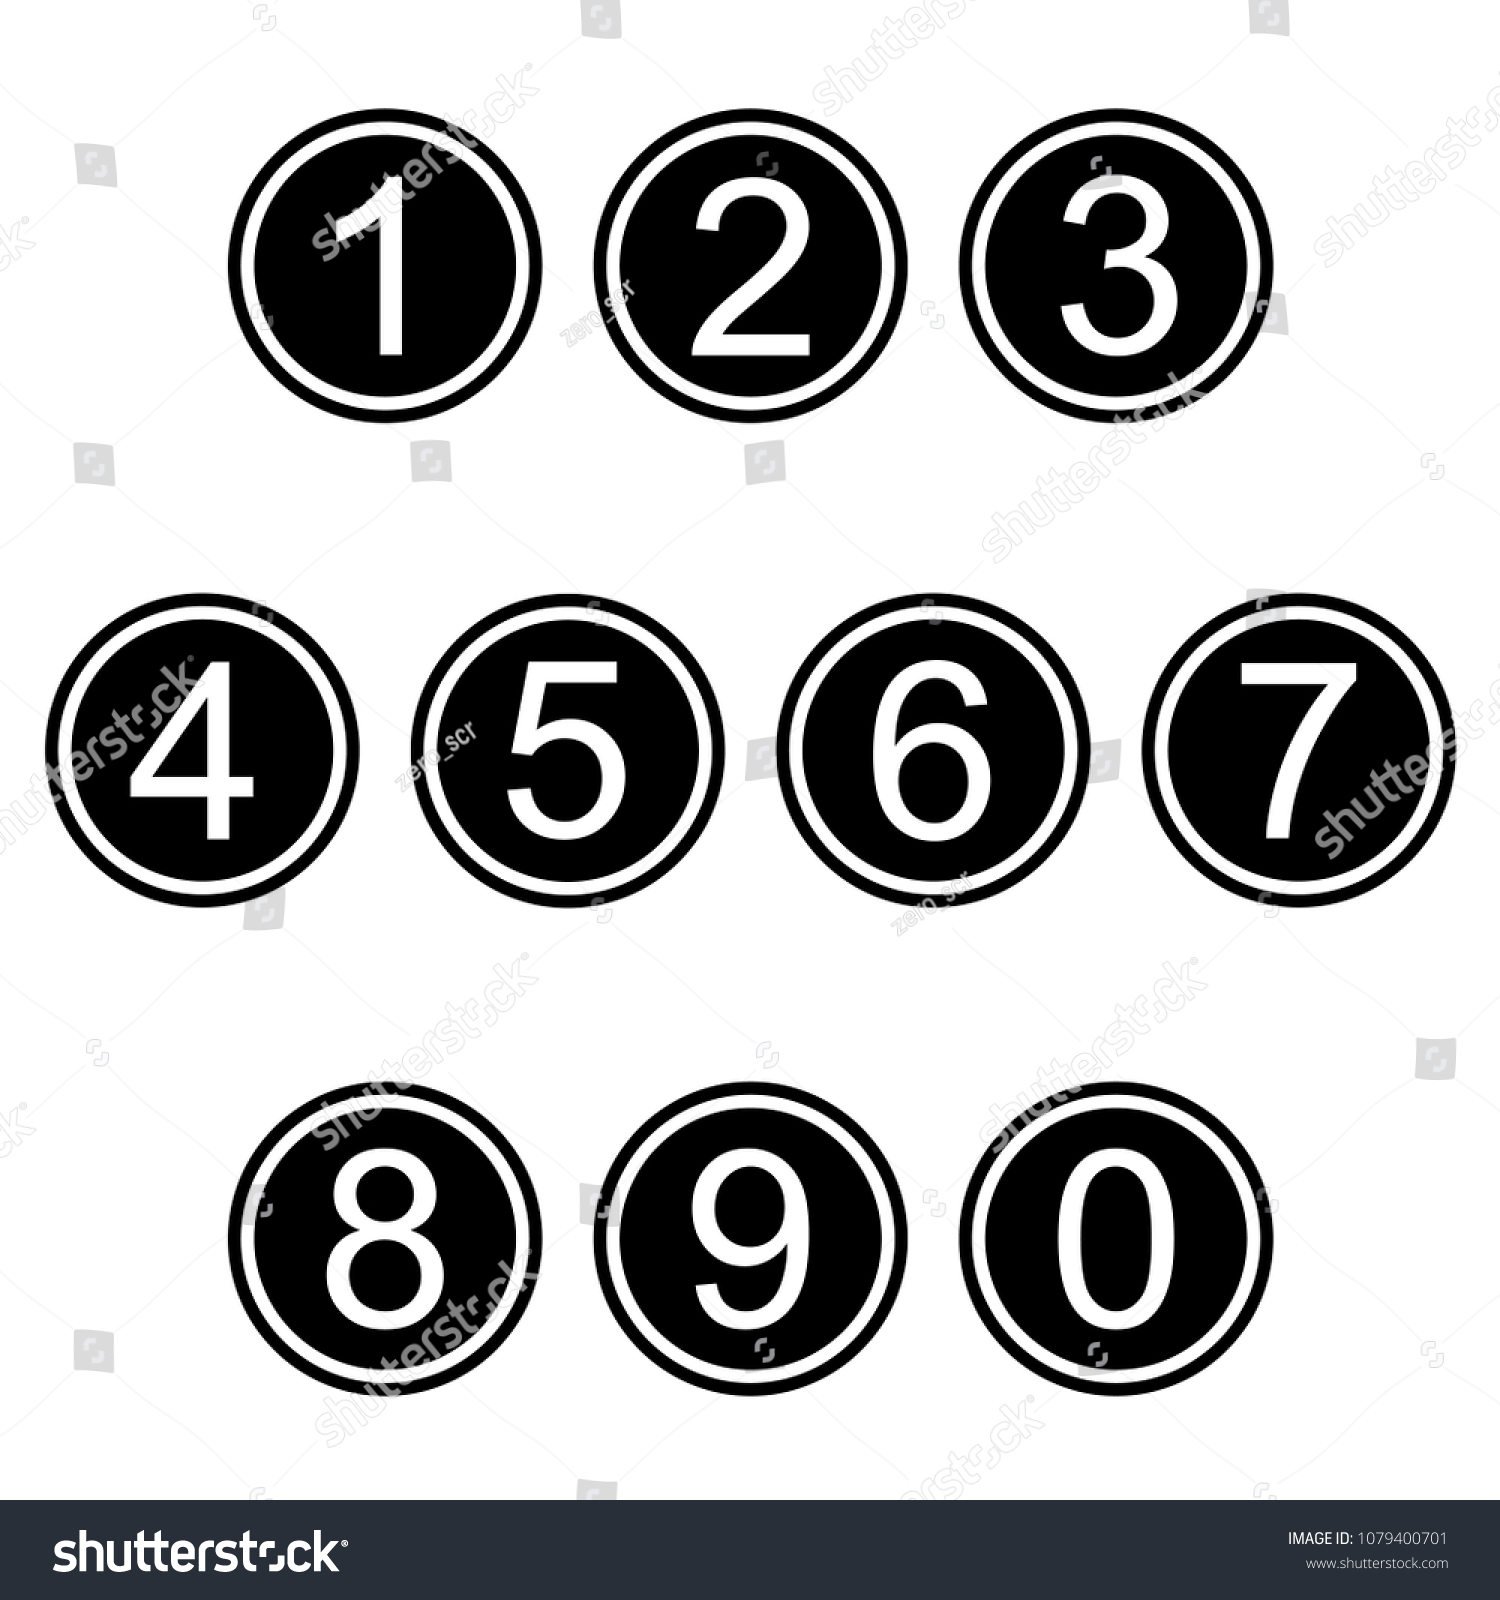 A mix of numbers and symbols. Иконки цифры. Иконки цифры в кружках. Цифры в кружочках черно белые. Пиктограммы цифры в круге.